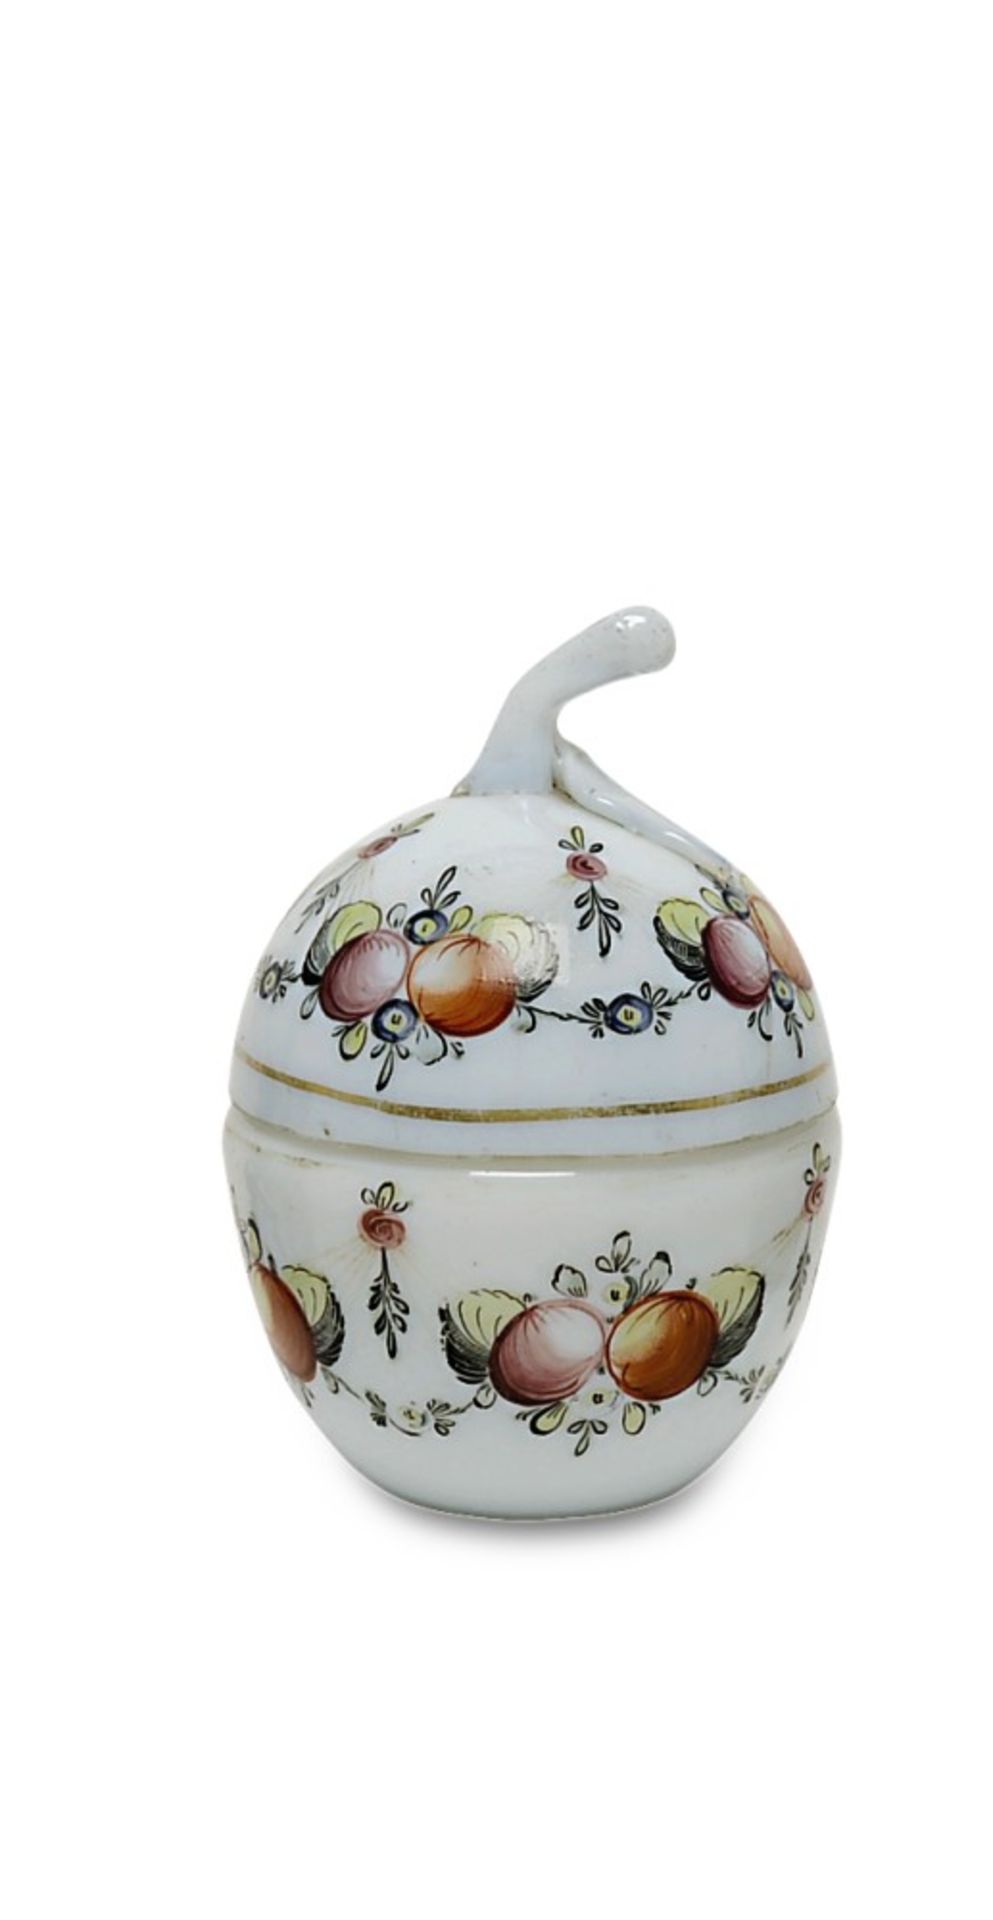 Dose19./20. Jh.Apfelähnliche Form aus weißem Alabasterglas mit buntem Blumengirlandende